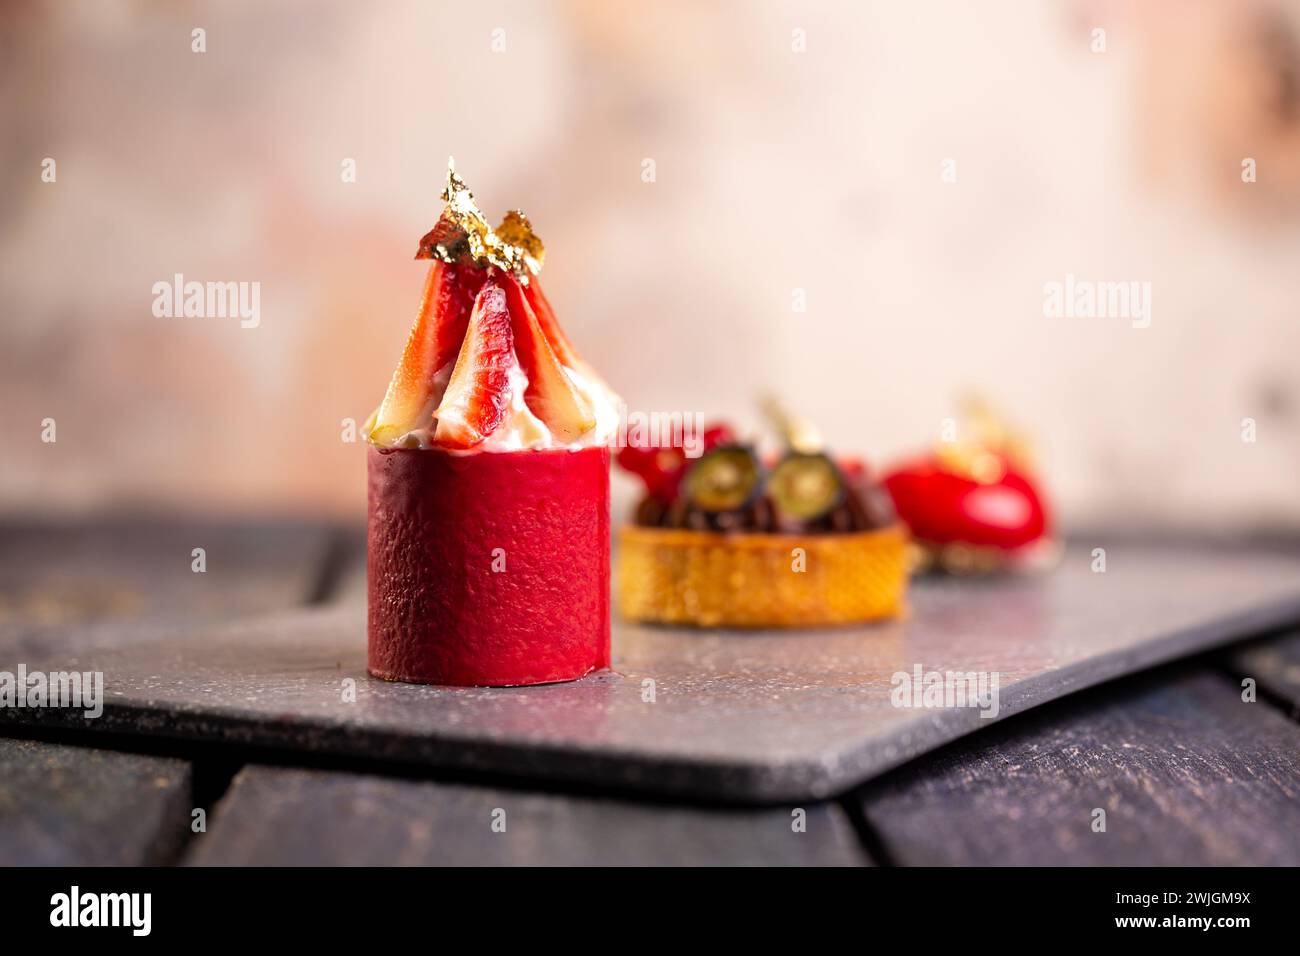 Tarte au chocolat gourmande, mousse à la fraise, macaron à la framboise sur planche en ardoise avec fond rose pour un élégant affichage de dessert. Banque D'Images